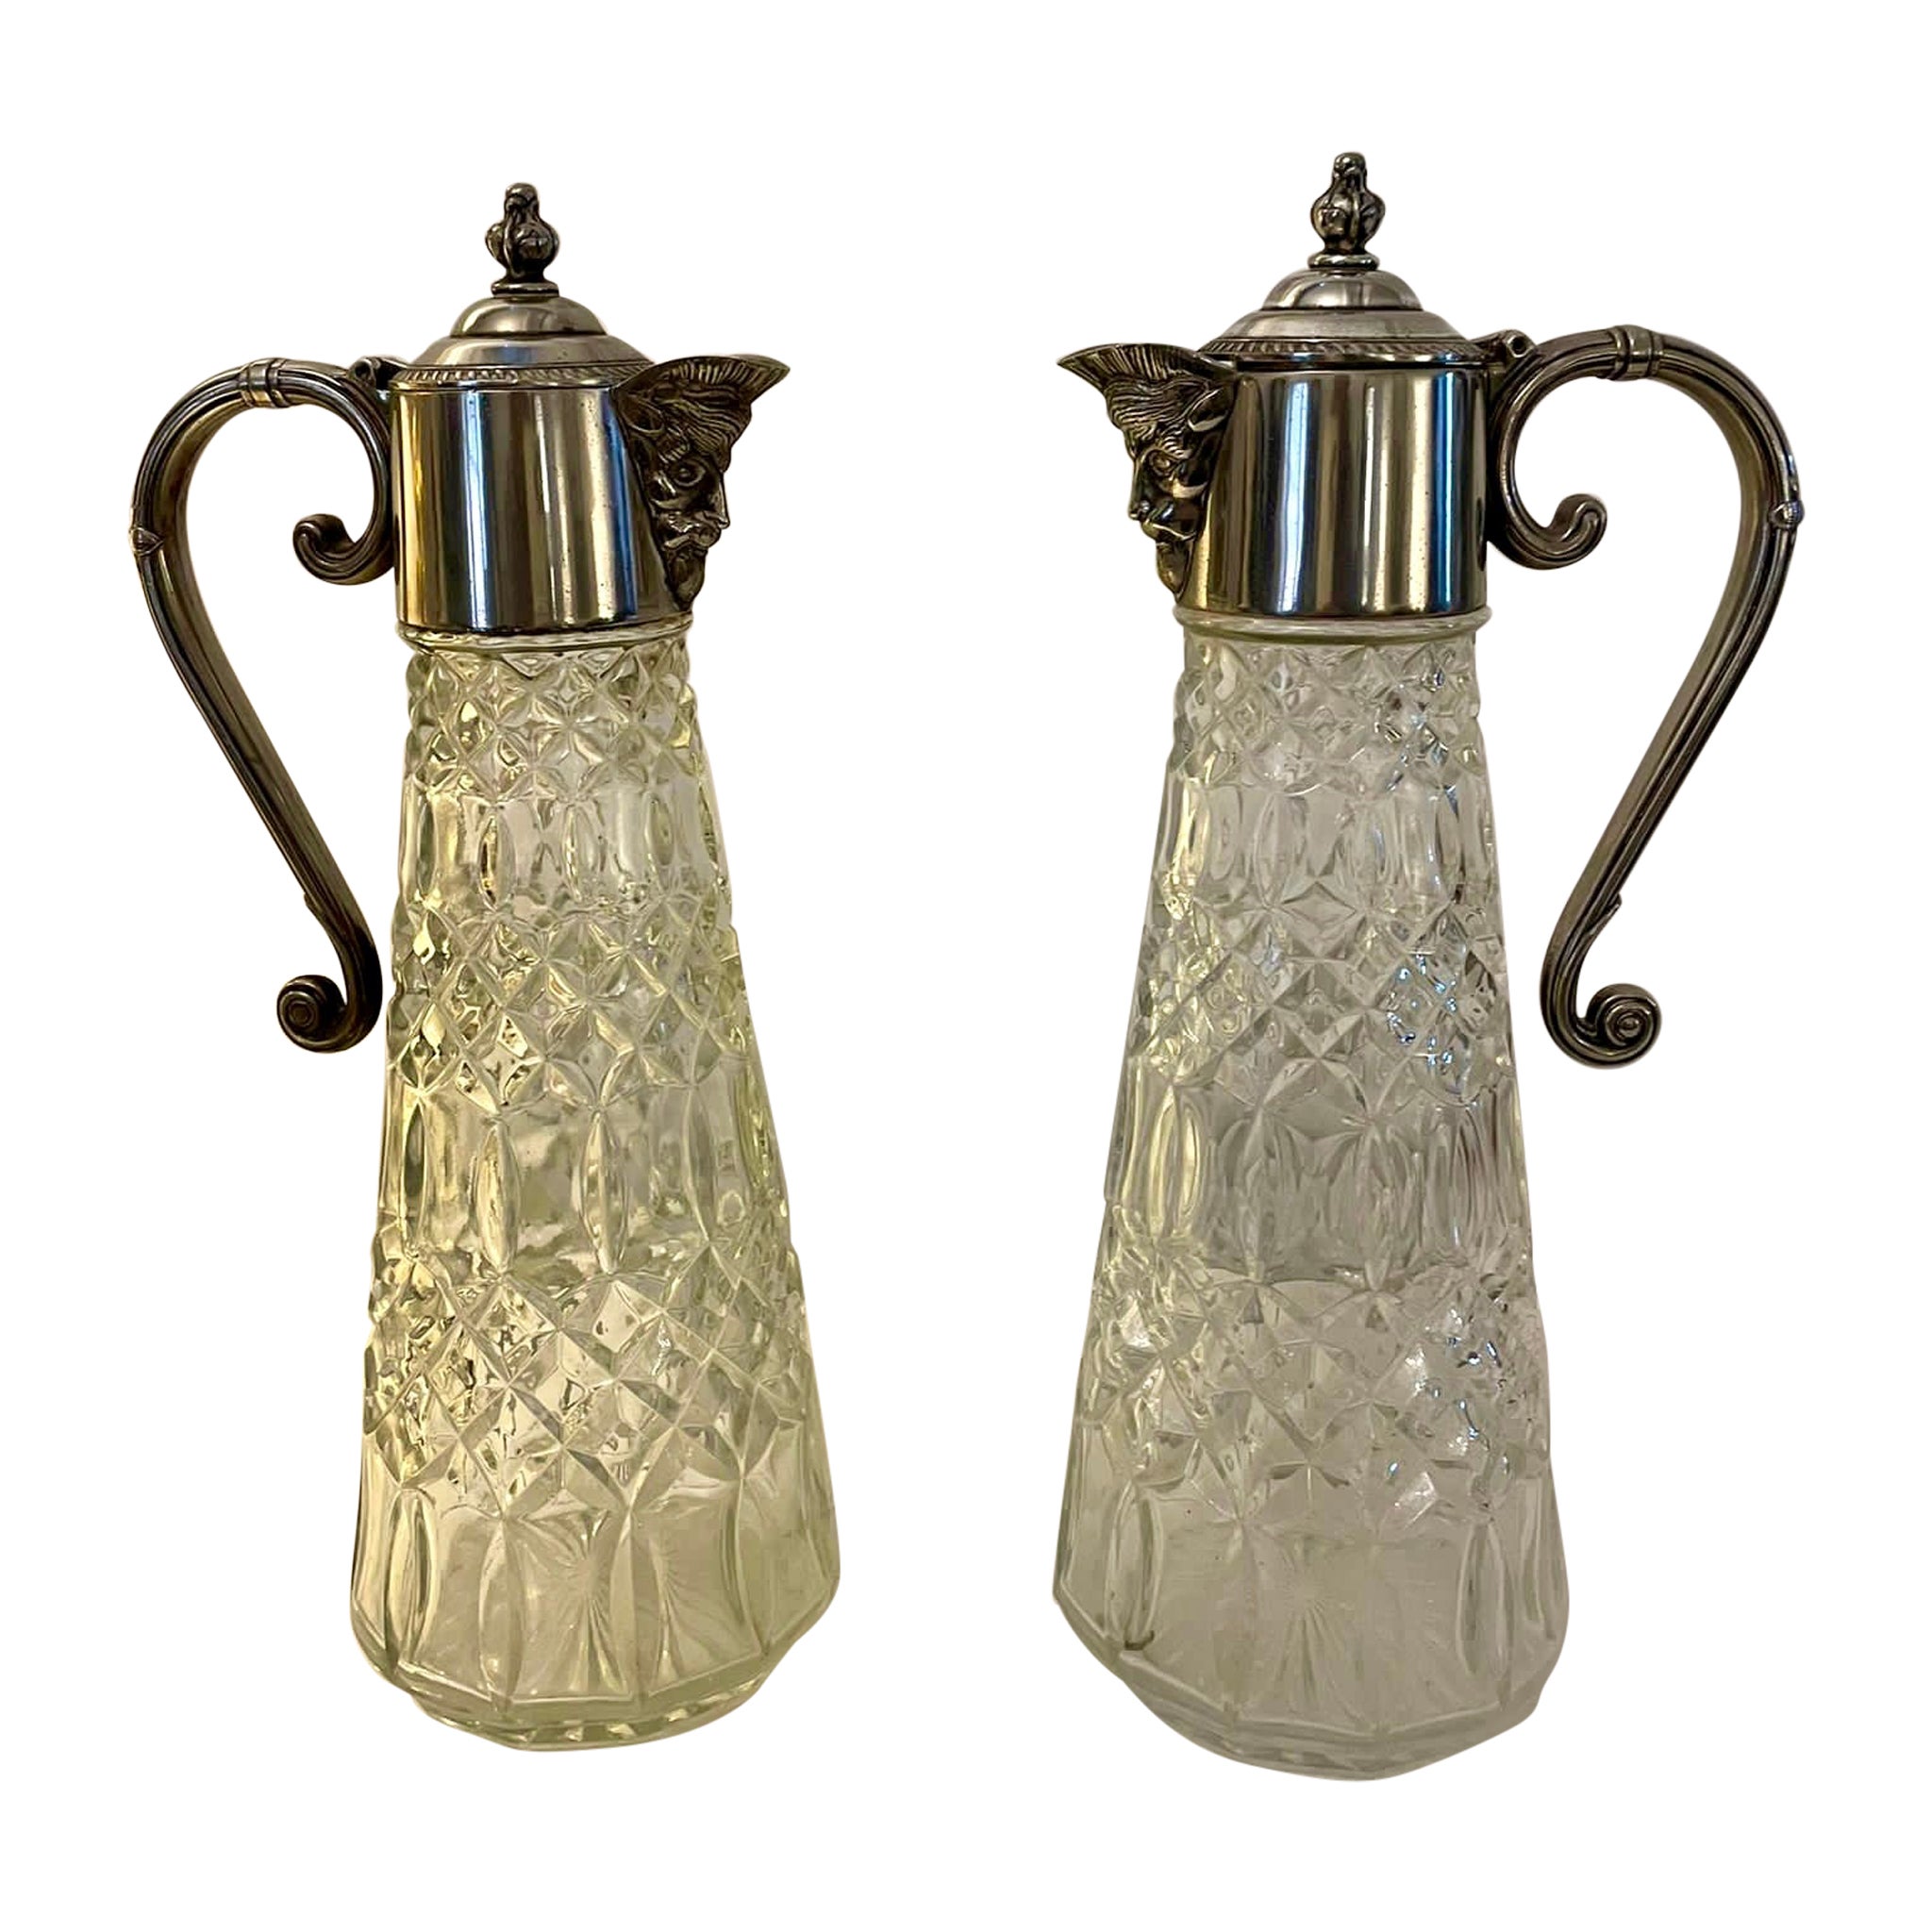 Paar antike edwardianische Claret-Krüge aus versilbertem und geschliffenem Glas in edwardianischer Qualität